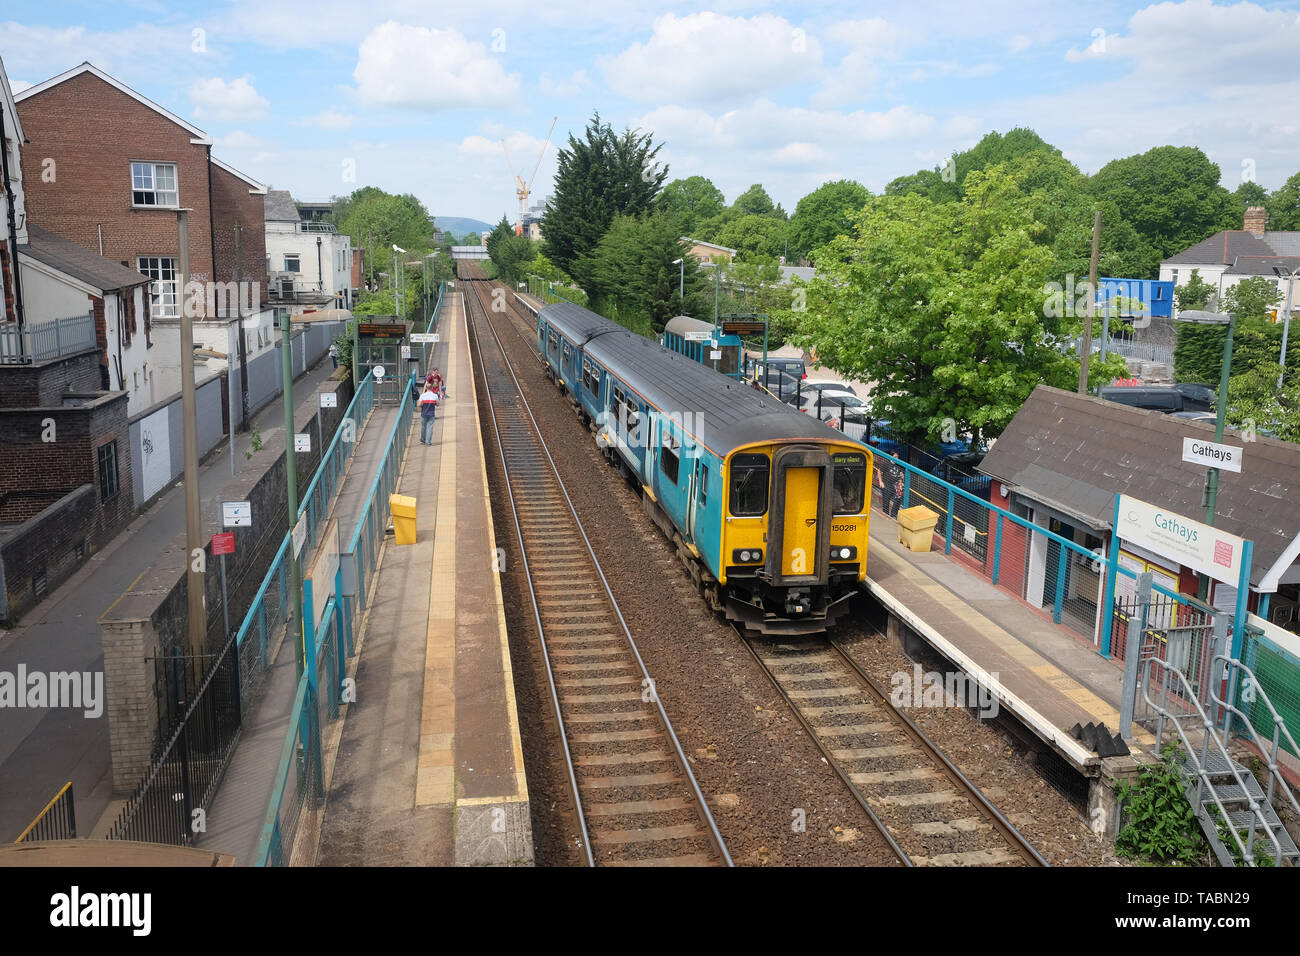 Mai 2019 - Ländliche Zug eintrifft atSt Cathay's Station, in der Nähe von Cardiff Universität und Studentenwerk Stockfoto